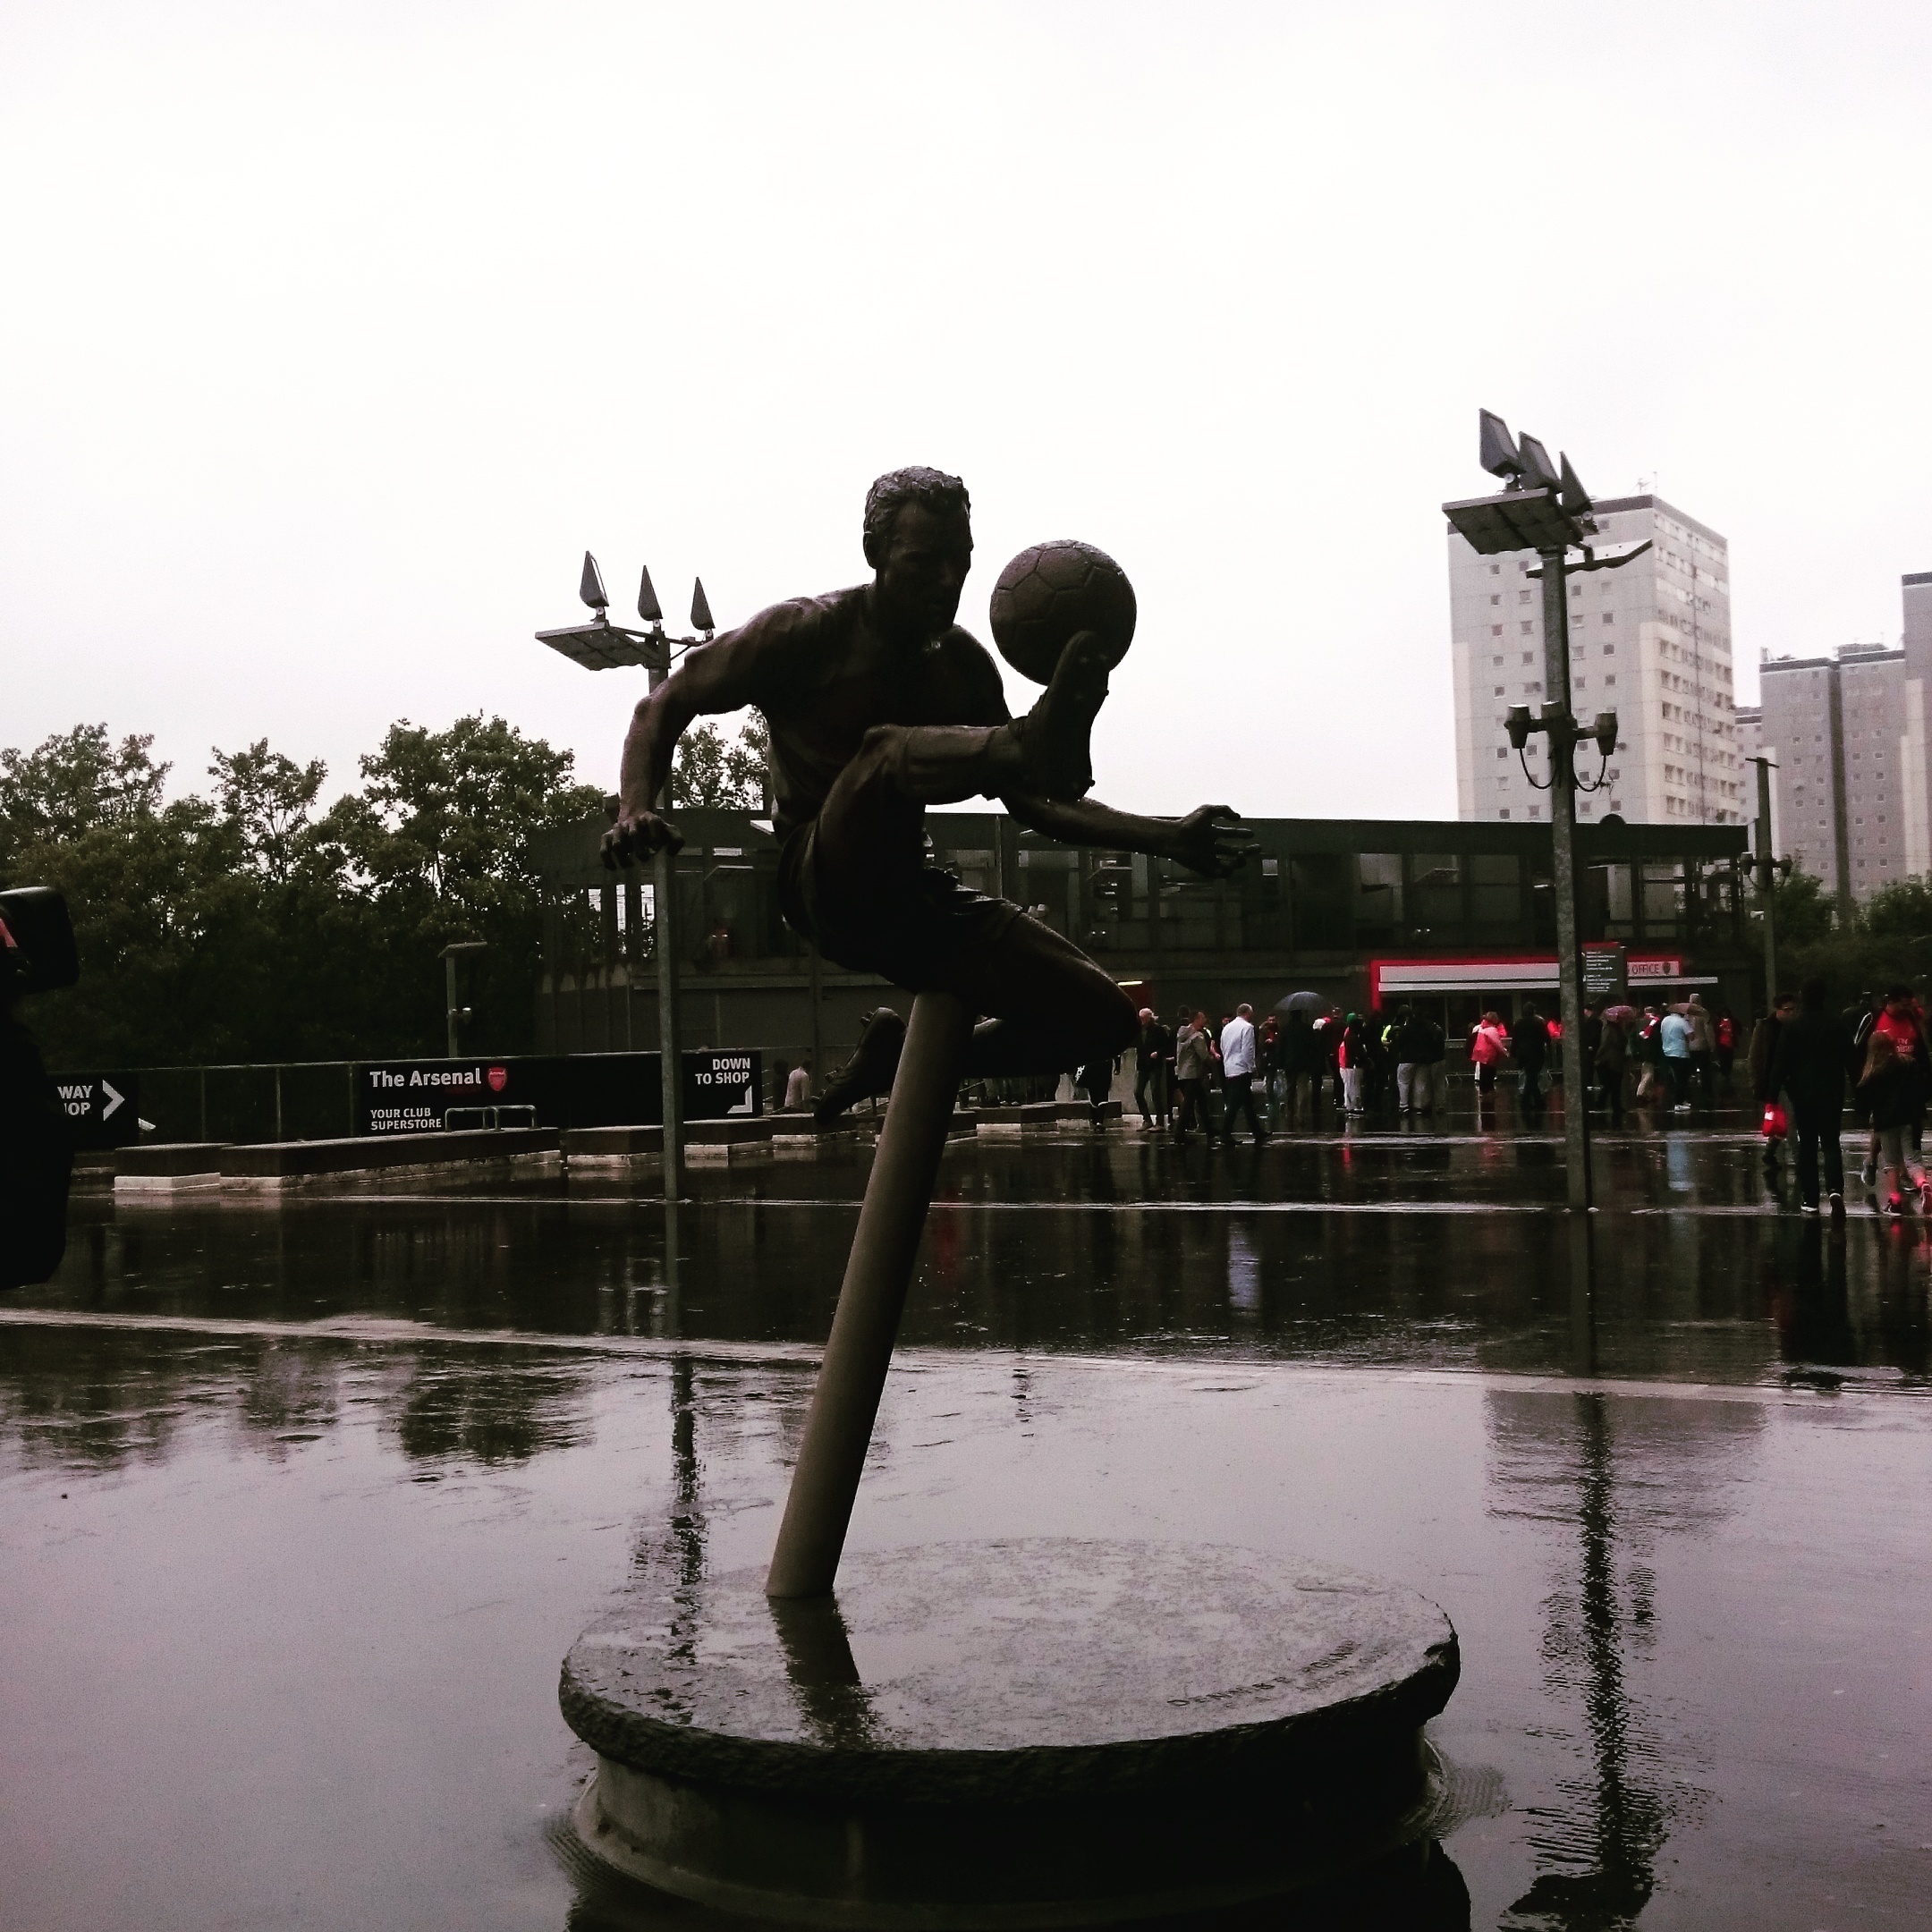 The Dennis Bergkamp statue set against the dreary September rain